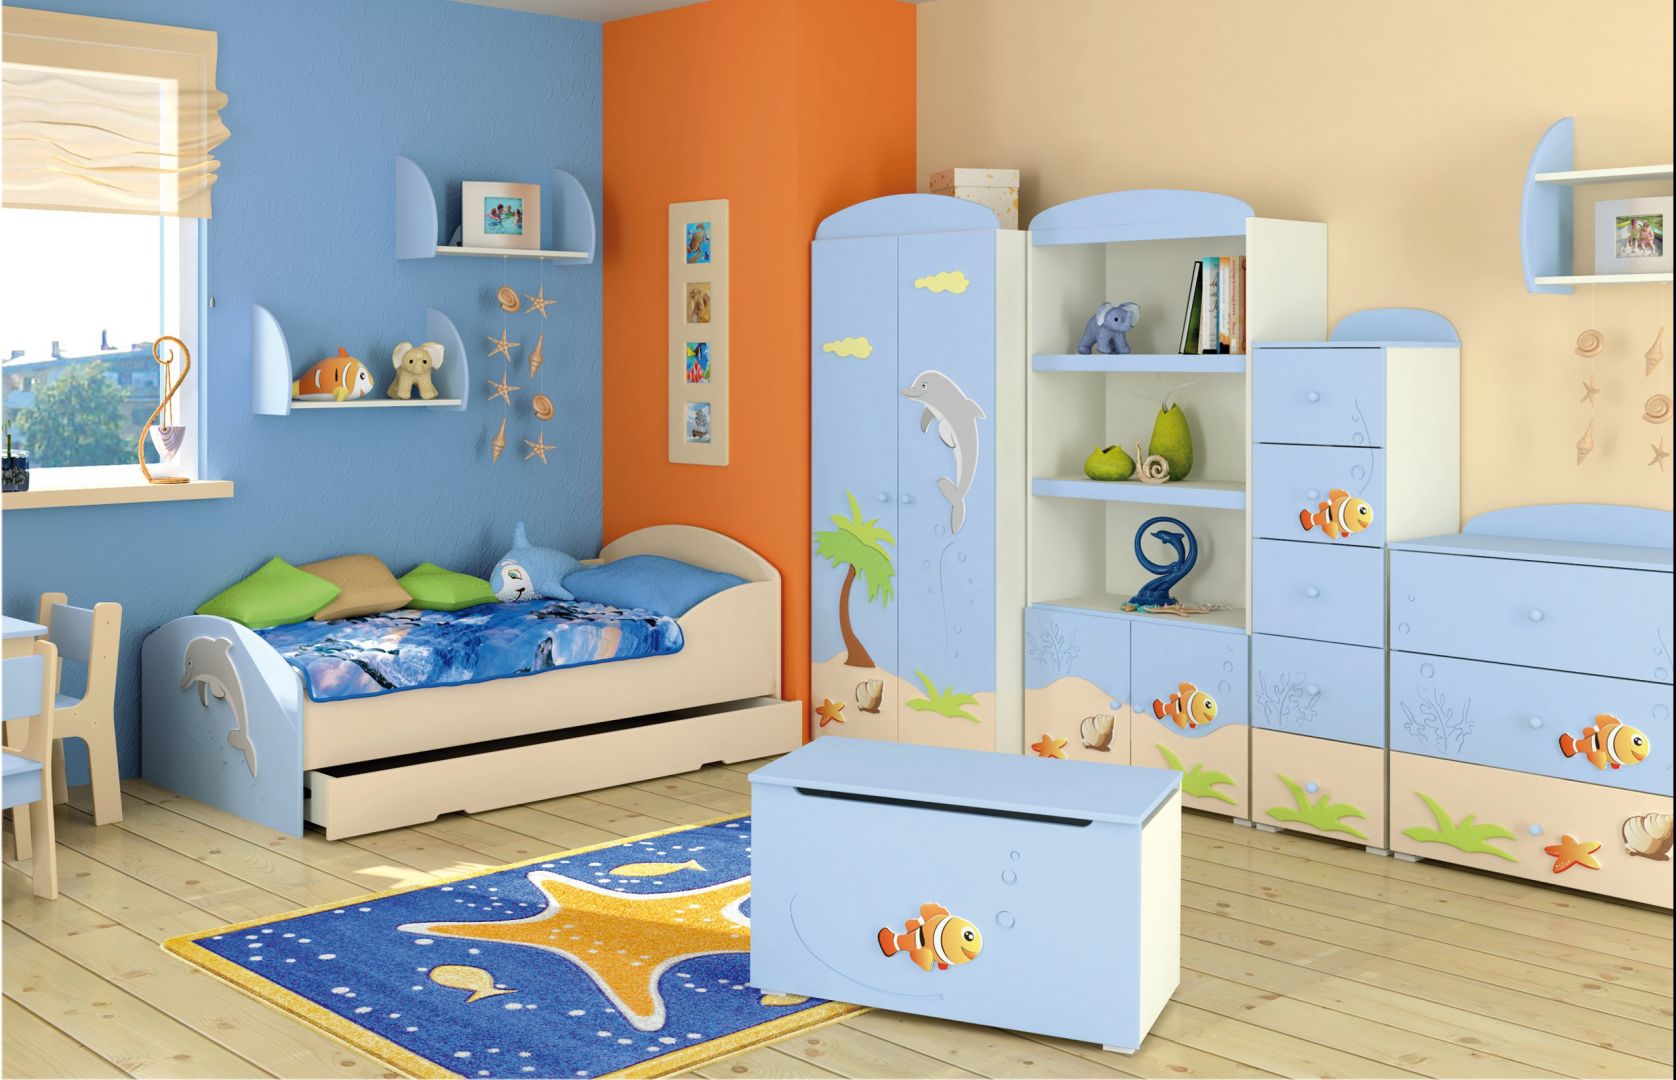 Morski błękit oraz ciekawe motywy są dobrym połączeniem do pokoju dziecięcego Fot. Baggi Design